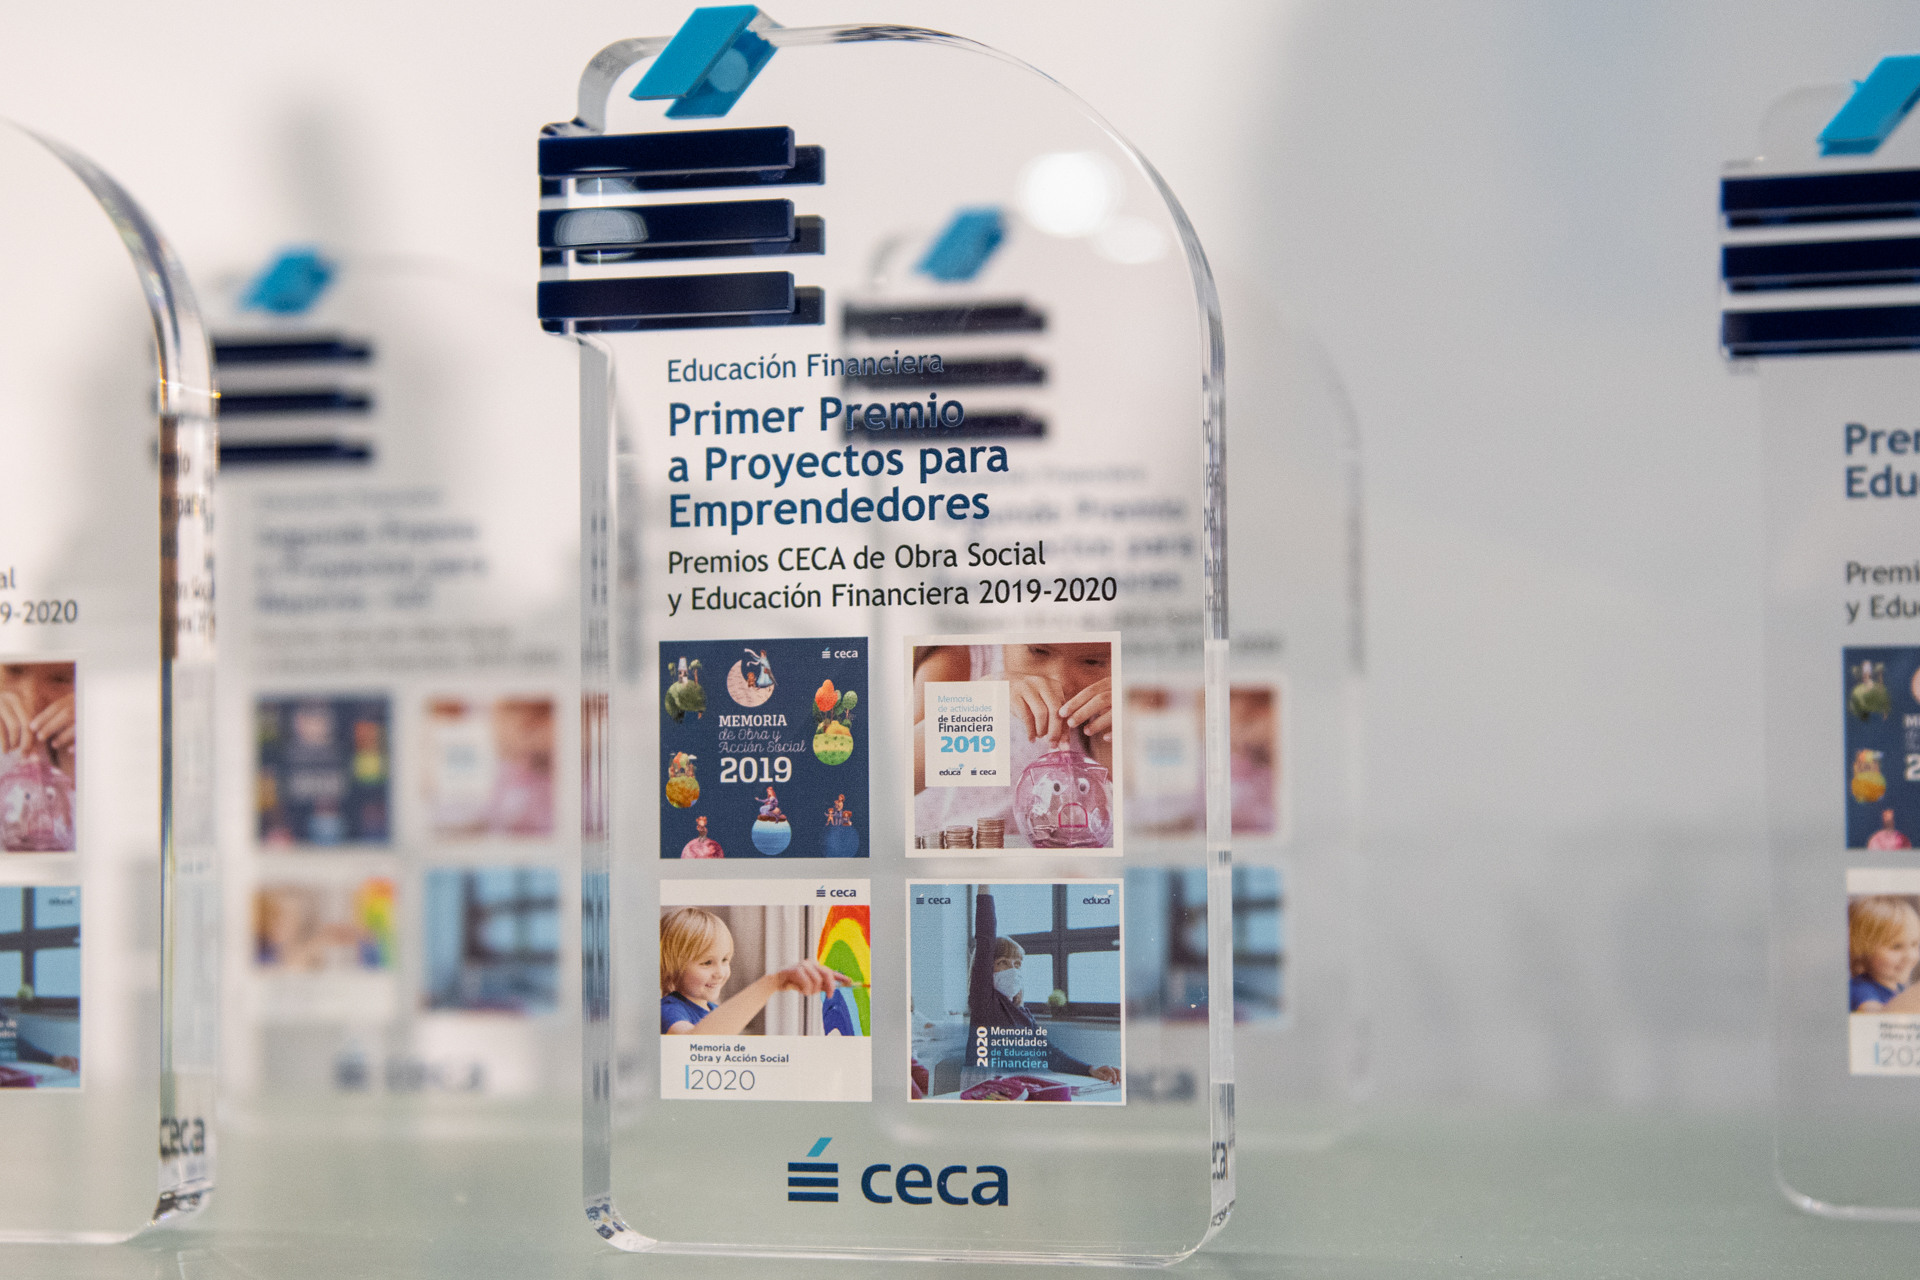 Premios CECA Obra Social y Educación Financiera 2019-2020